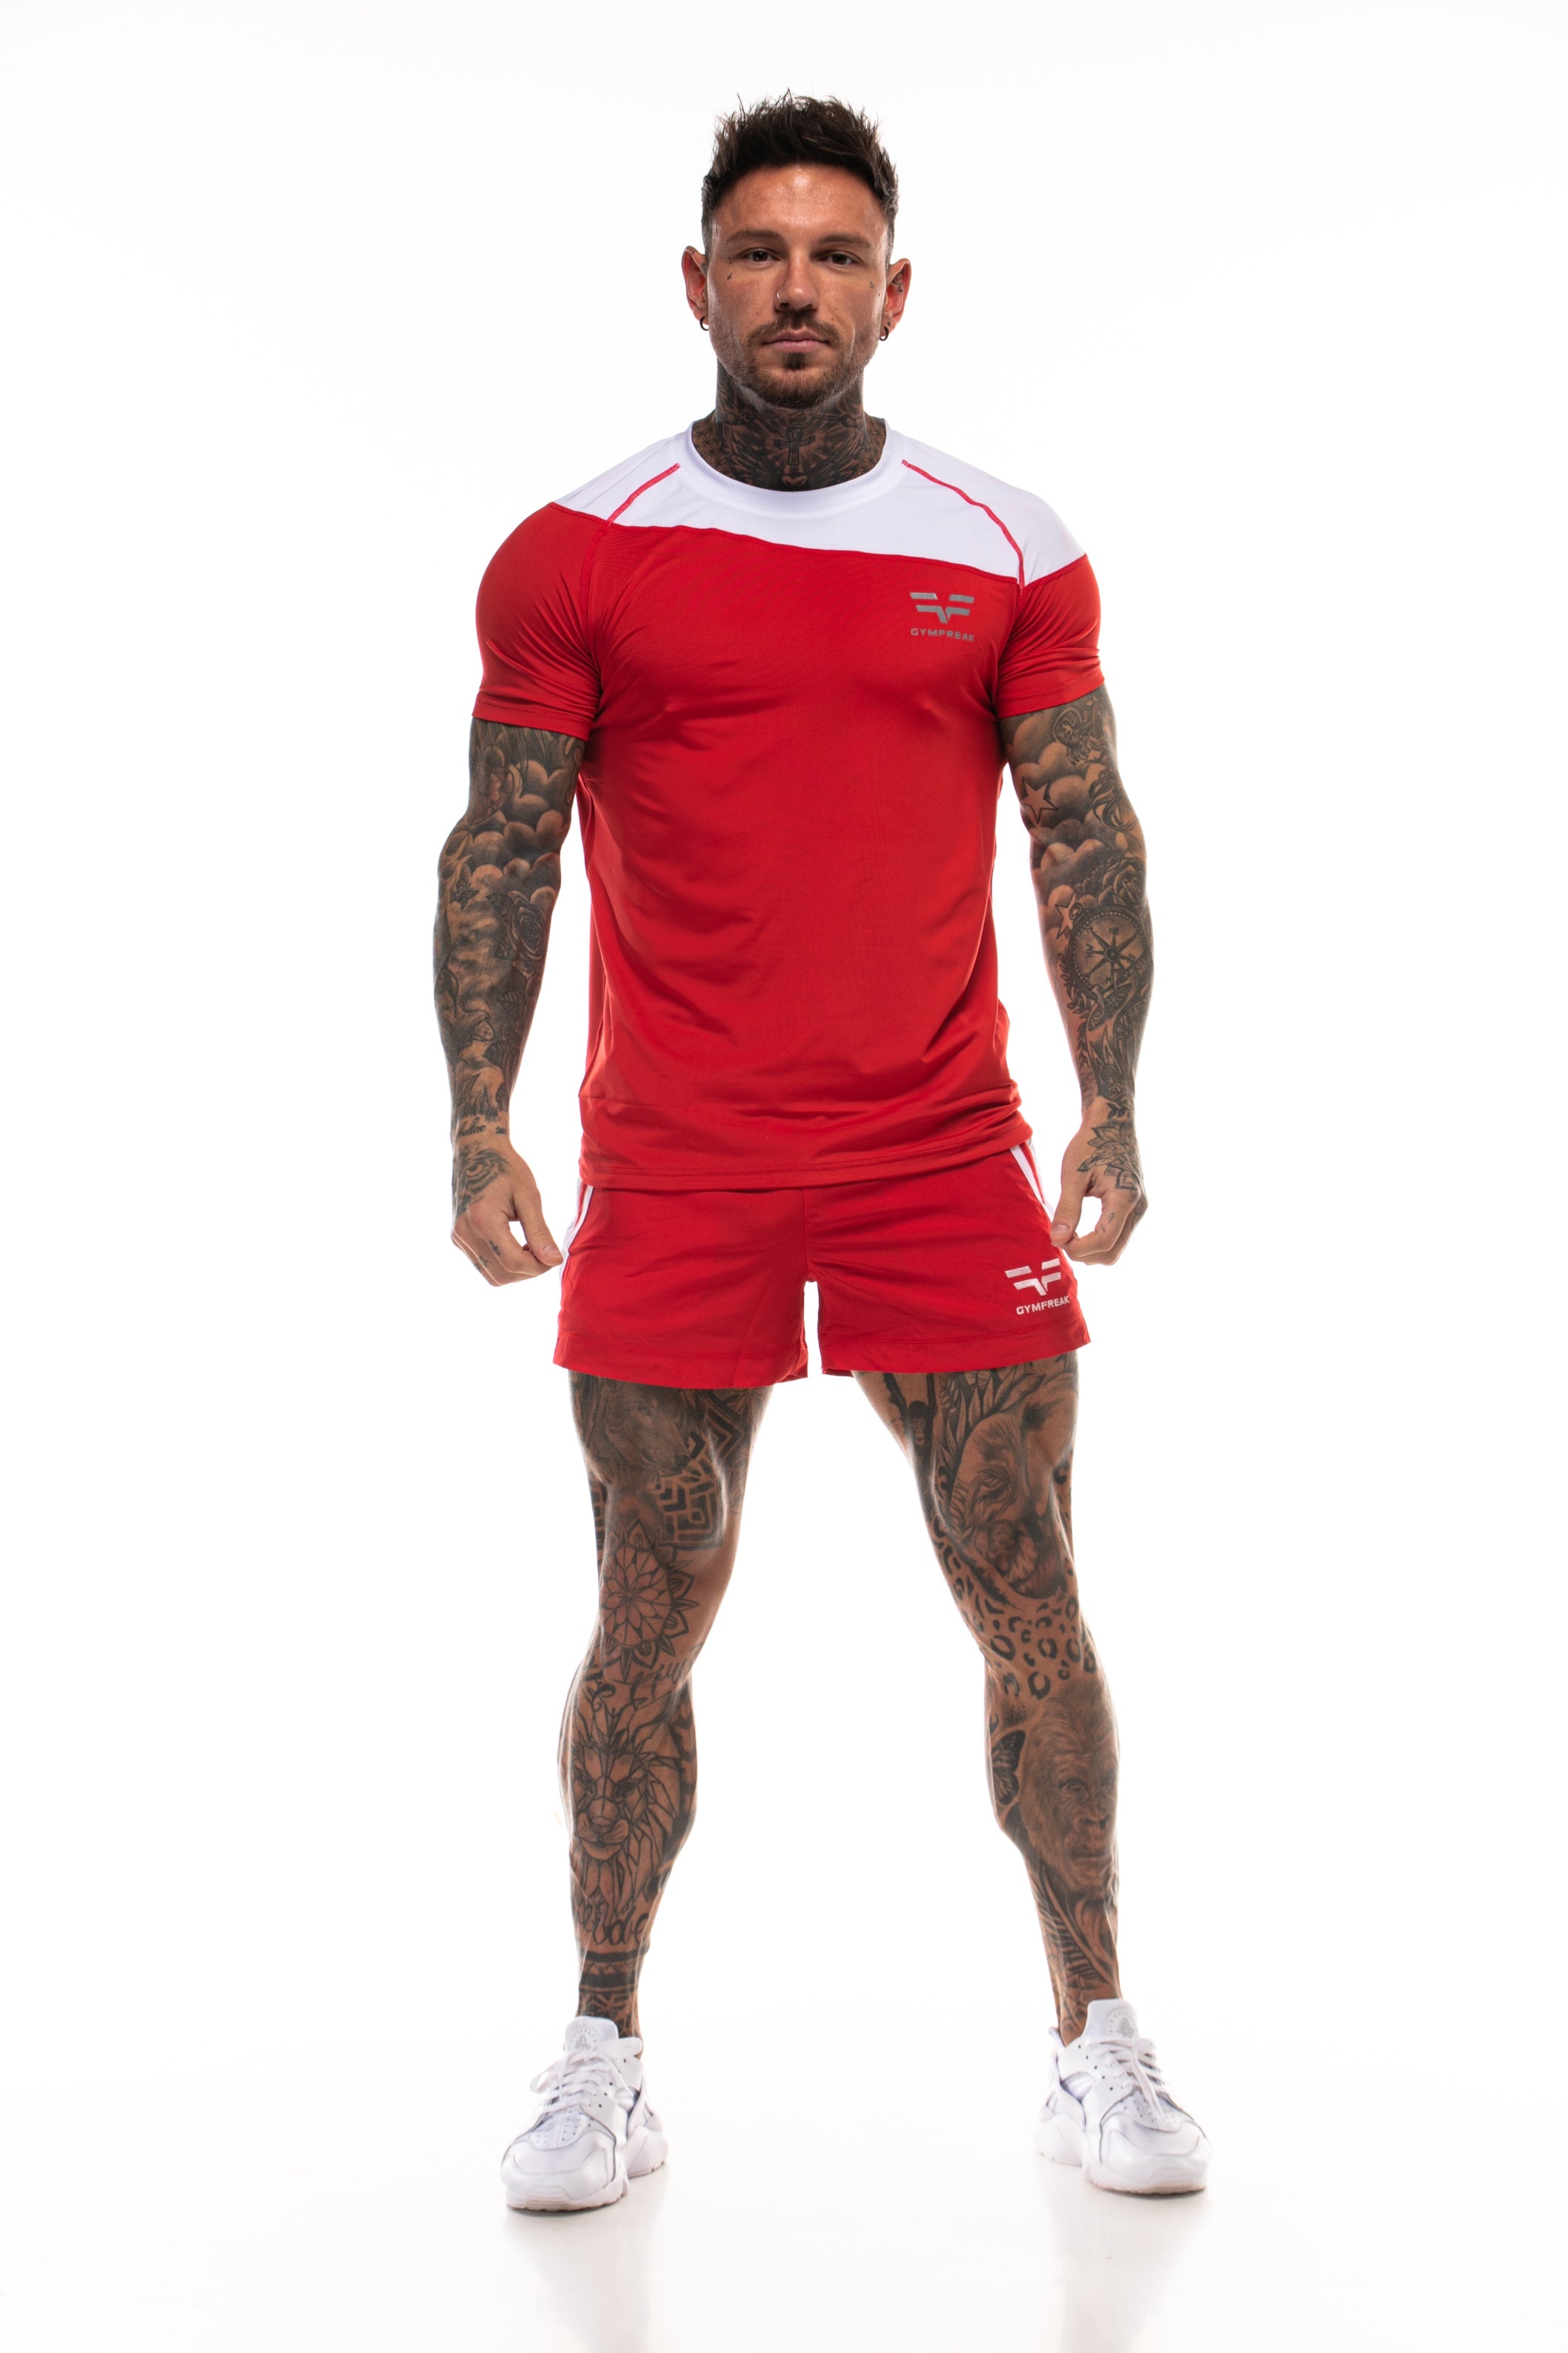 T-Shirt Pro GymFreak Homme - Rouge 